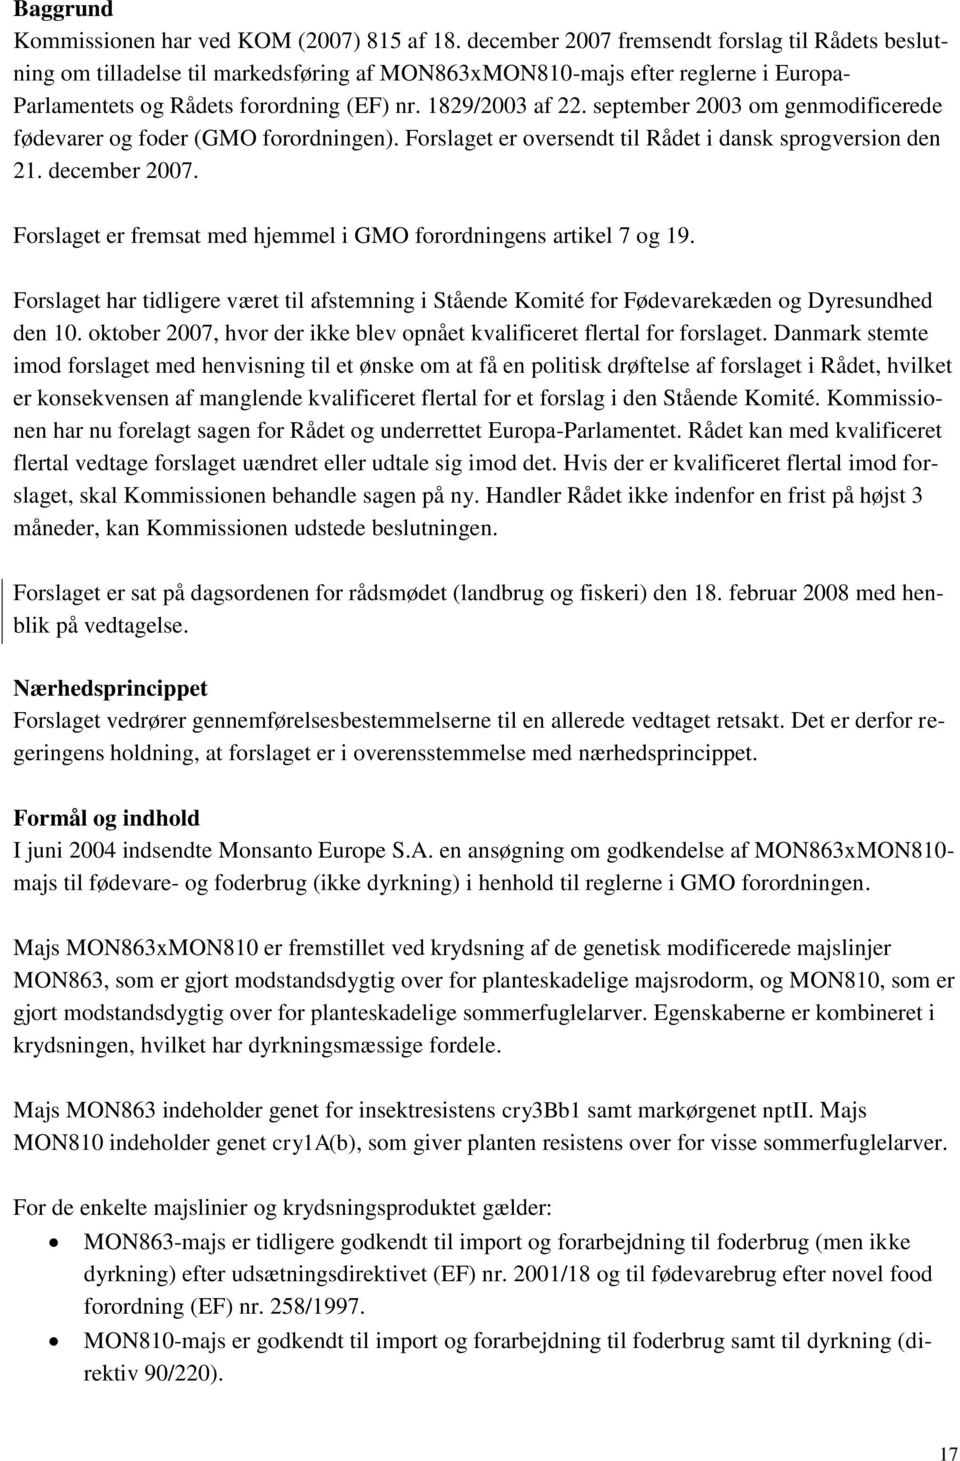 september 2003 om genmodificerede fødevarer og foder (GMO forordningen). Forslaget er oversendt til Rådet i dansk sprogversion den 21. december 2007.